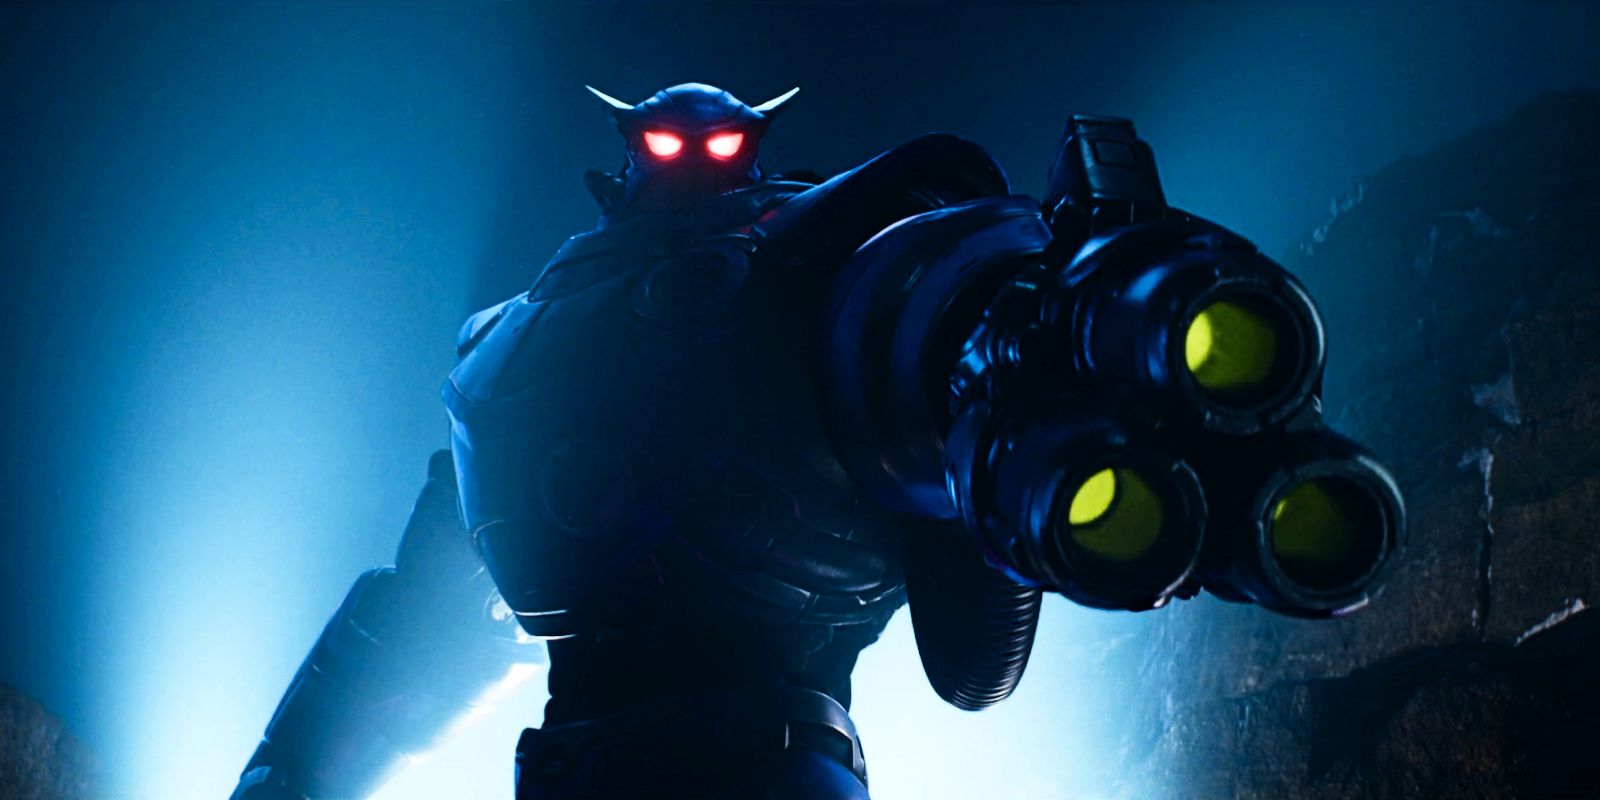 Los detalles de la película Lightyear sobre el villano Zurg son un spoiler, dice el productor